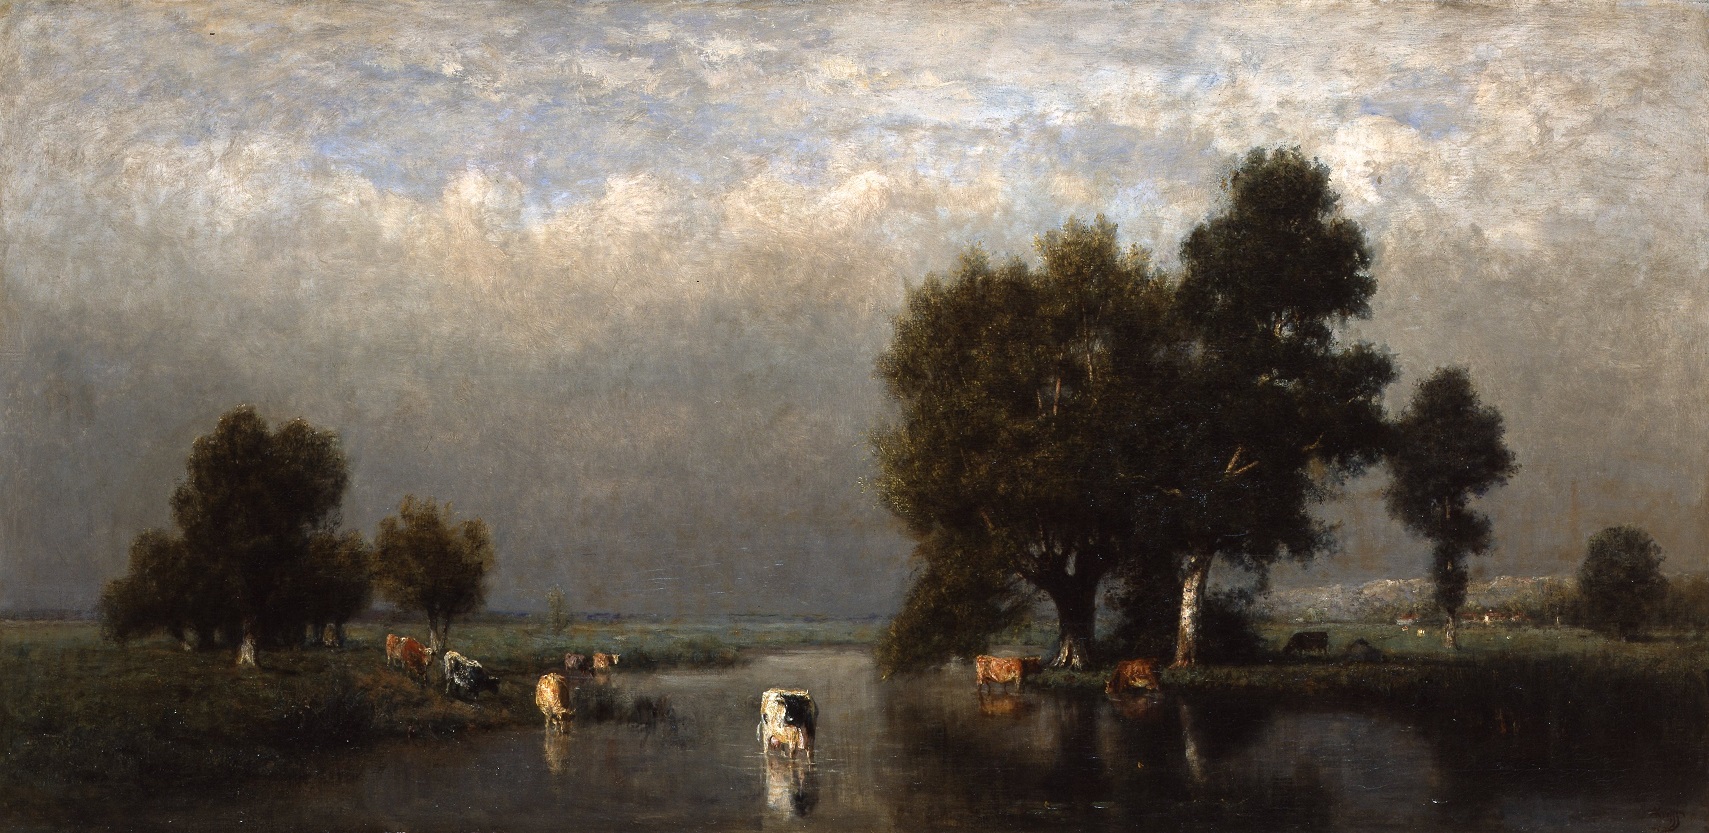 Альфред де Книфф, "Весенний берег", около 1875 года 